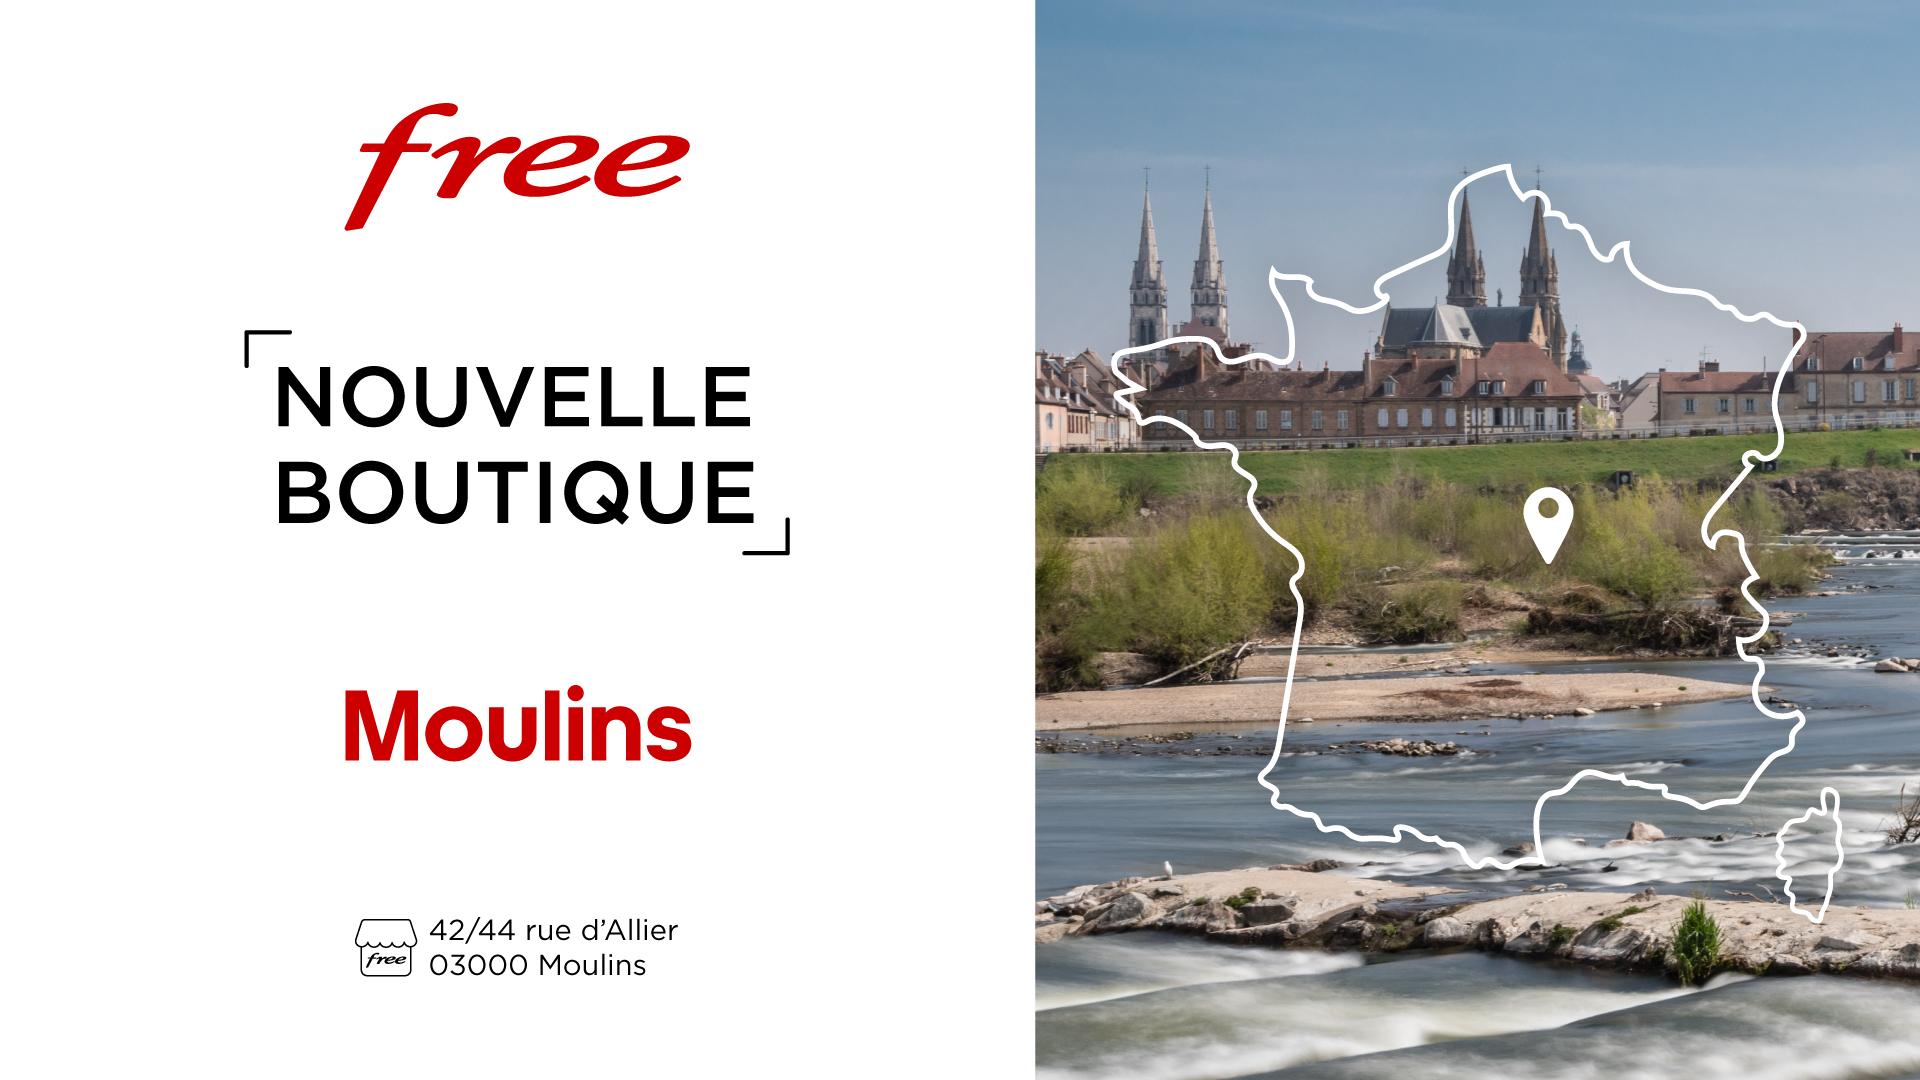 Découvrez la nouvelle boutique Free de Moulins